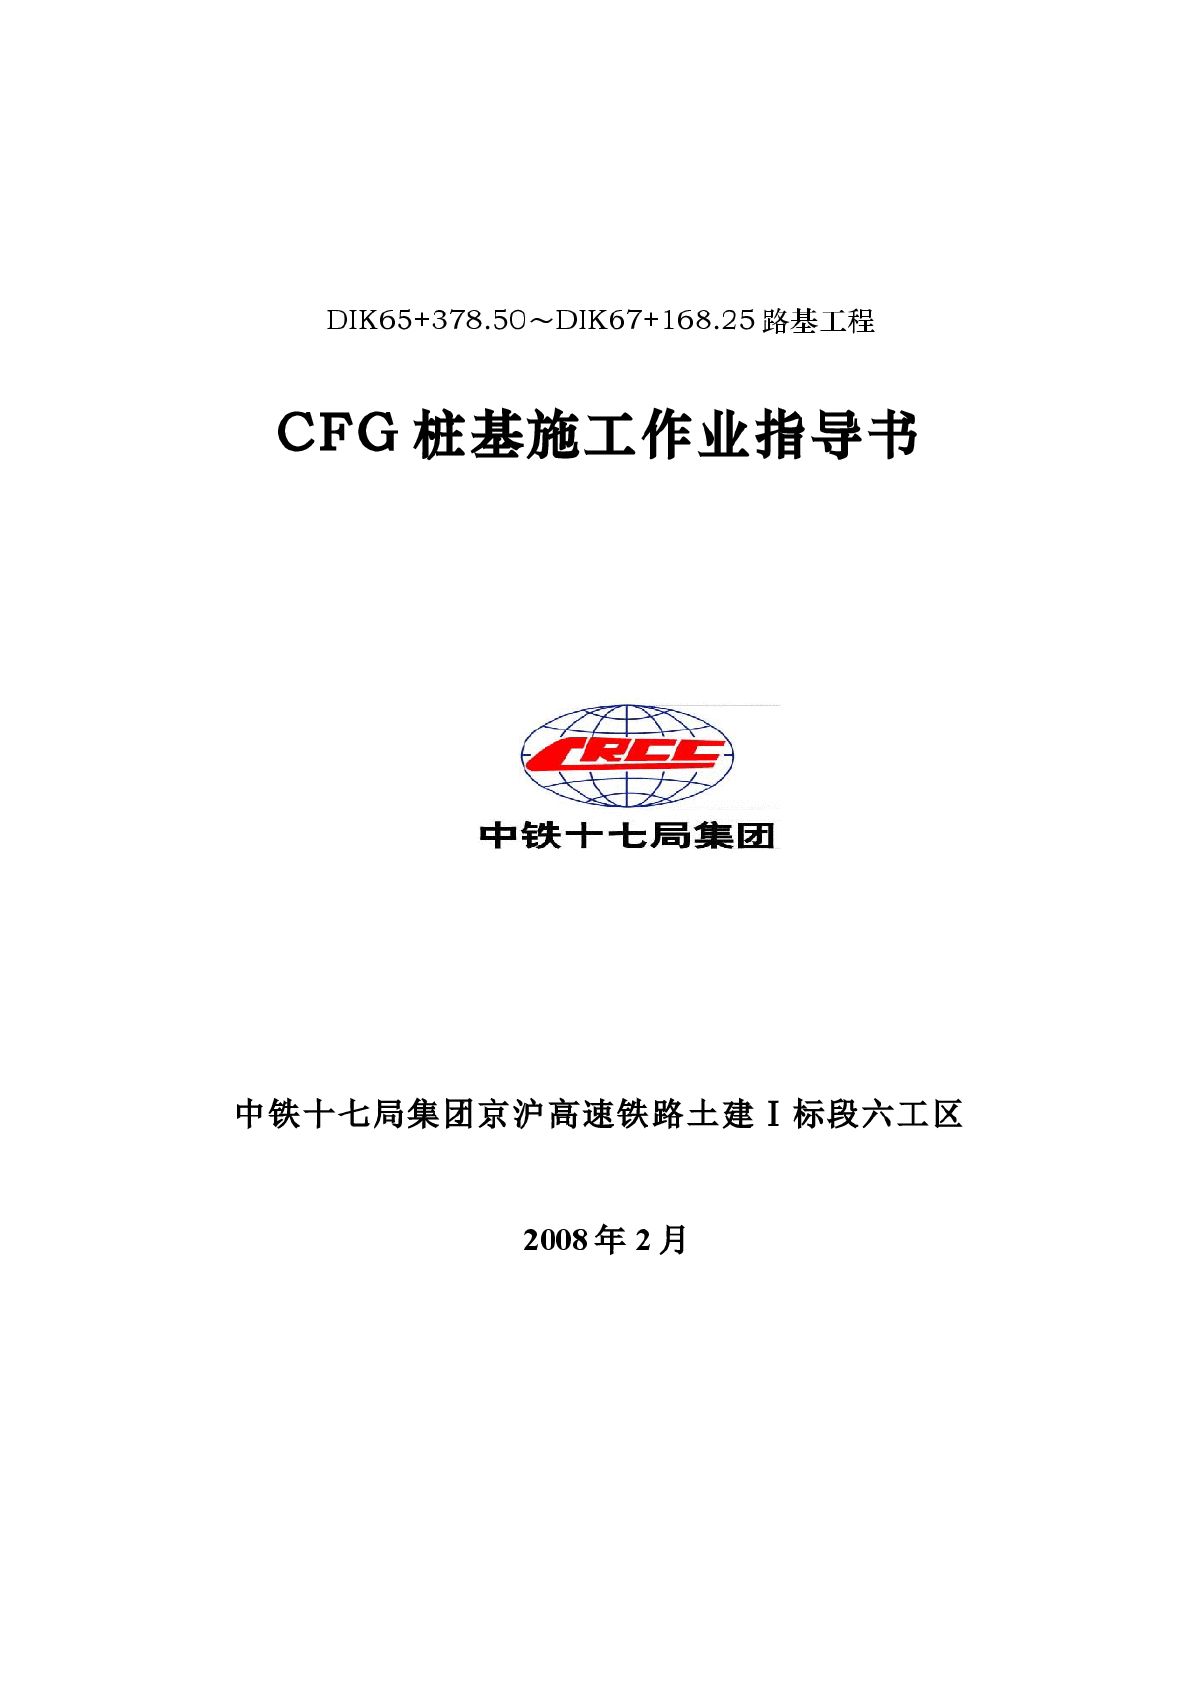 CFG桩基施工作业指导书